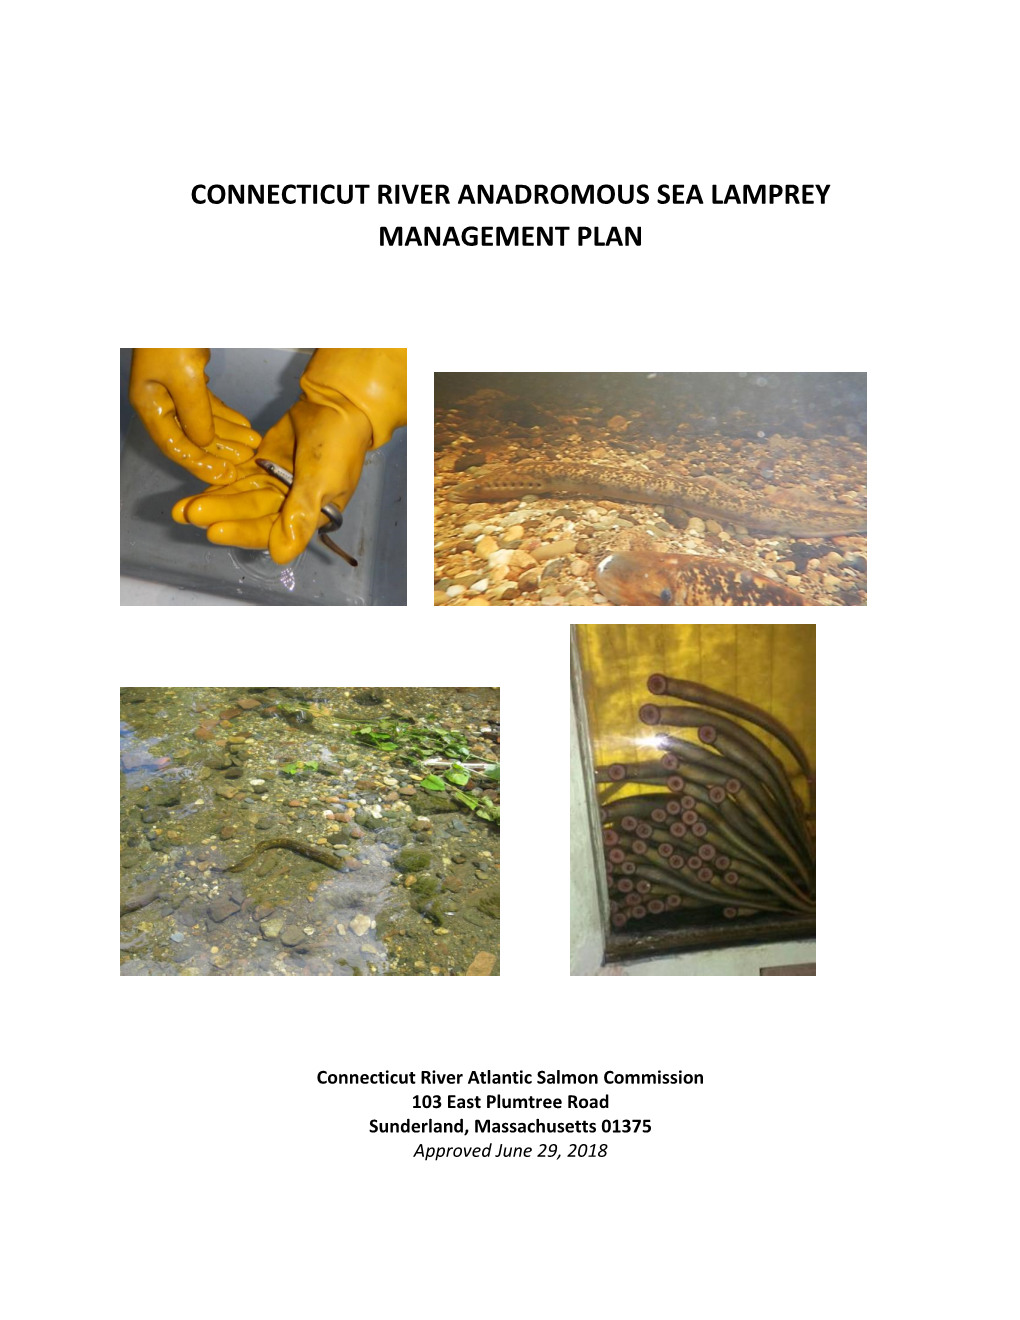 Connecticut River Anadromous Sea Lamprey Management Plan